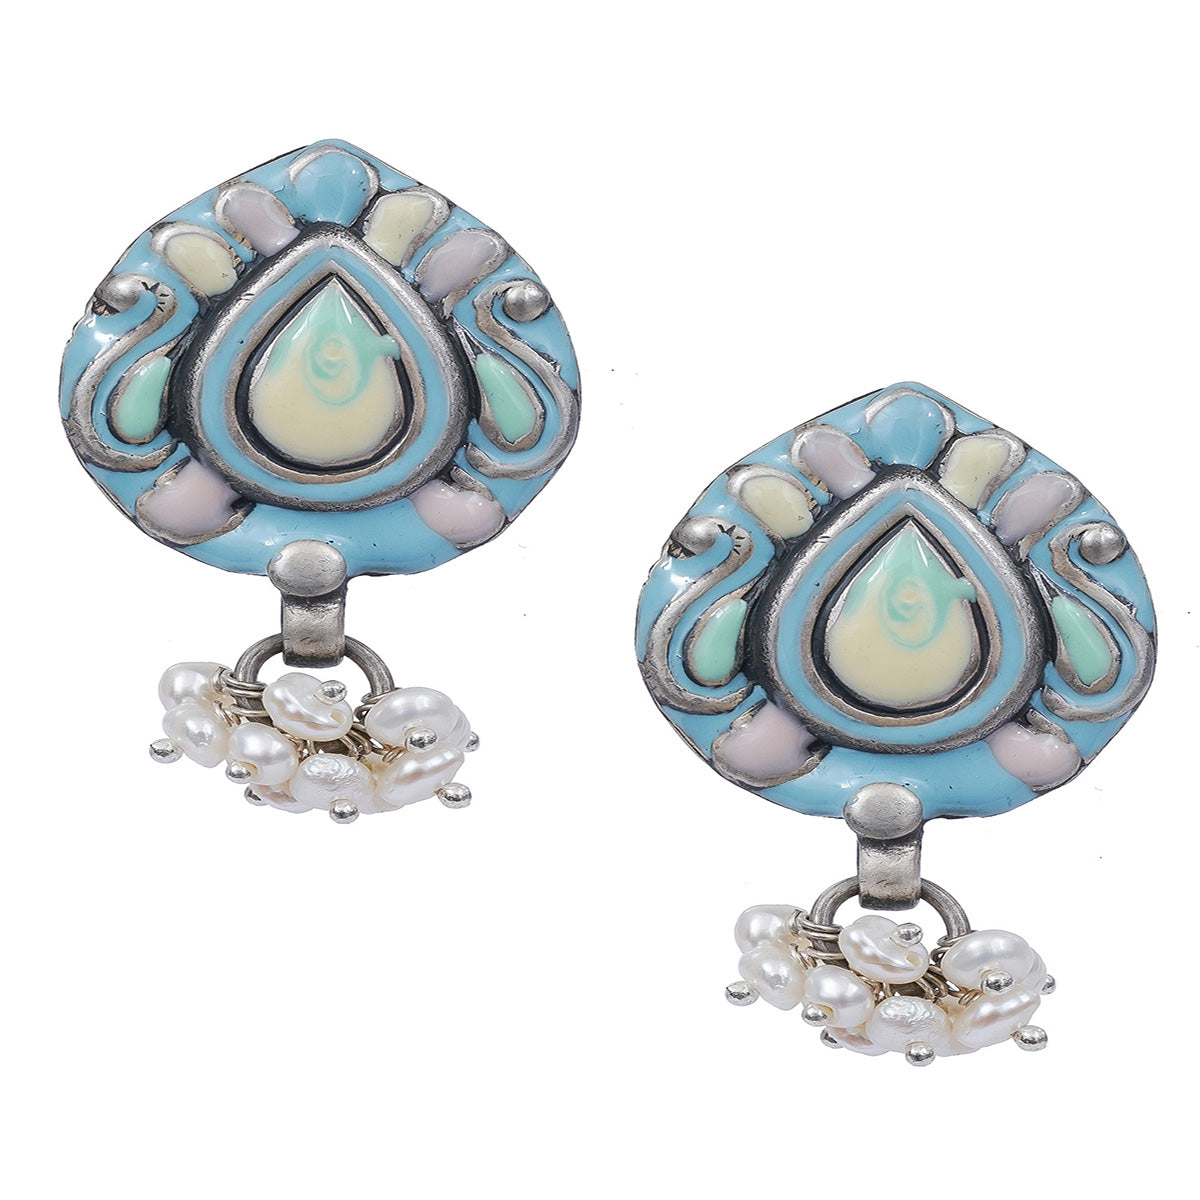 Pastel Blue Handcrafted Enamel Earrings With Pearl Hangings - UMANG